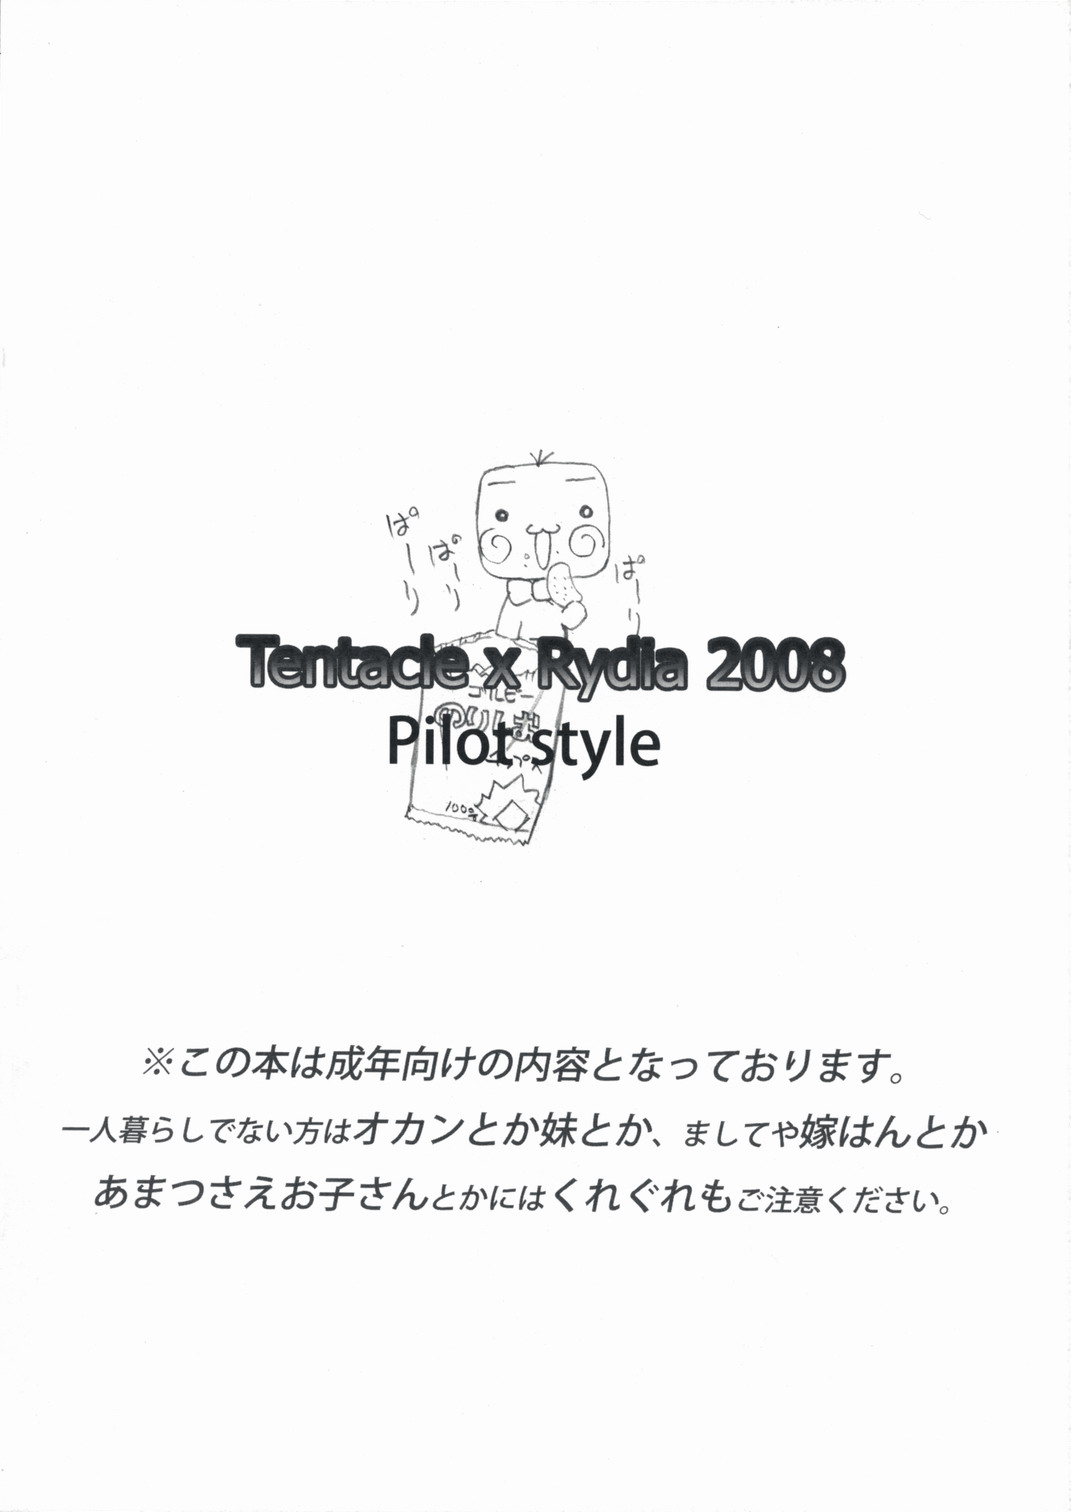 [Teio tei] tentacle x rydia 2008 Pilot style (FF4) 